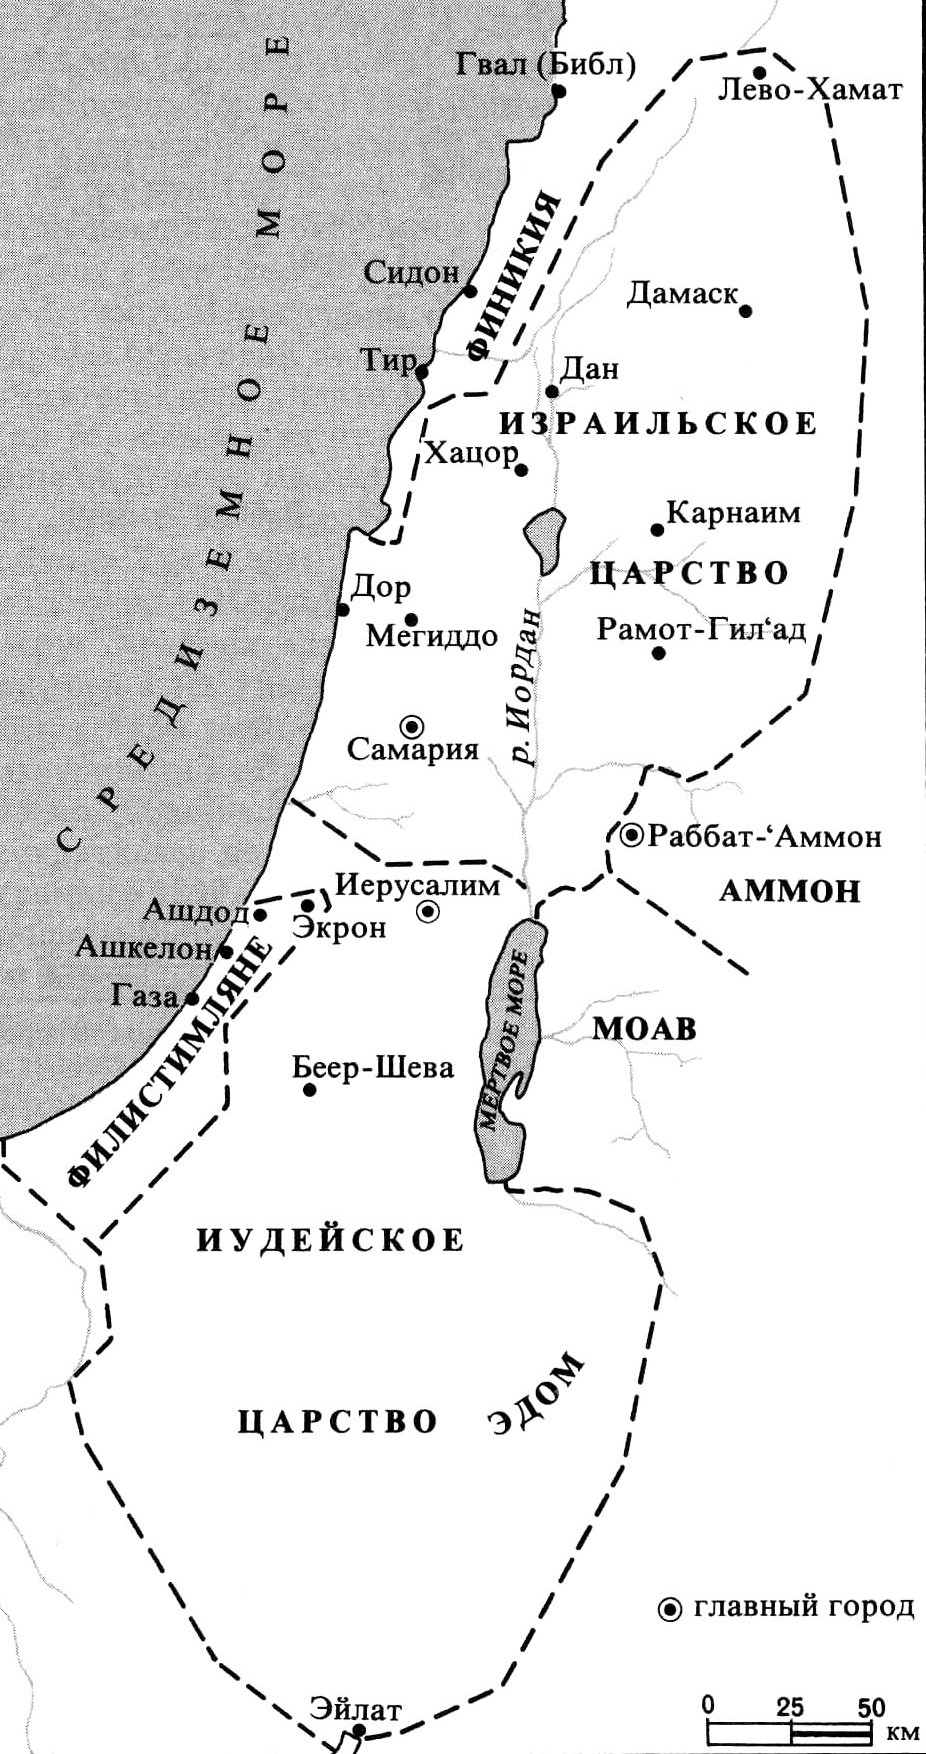 Израильское и Иудейское царства в IX-VIII веках до н.э.